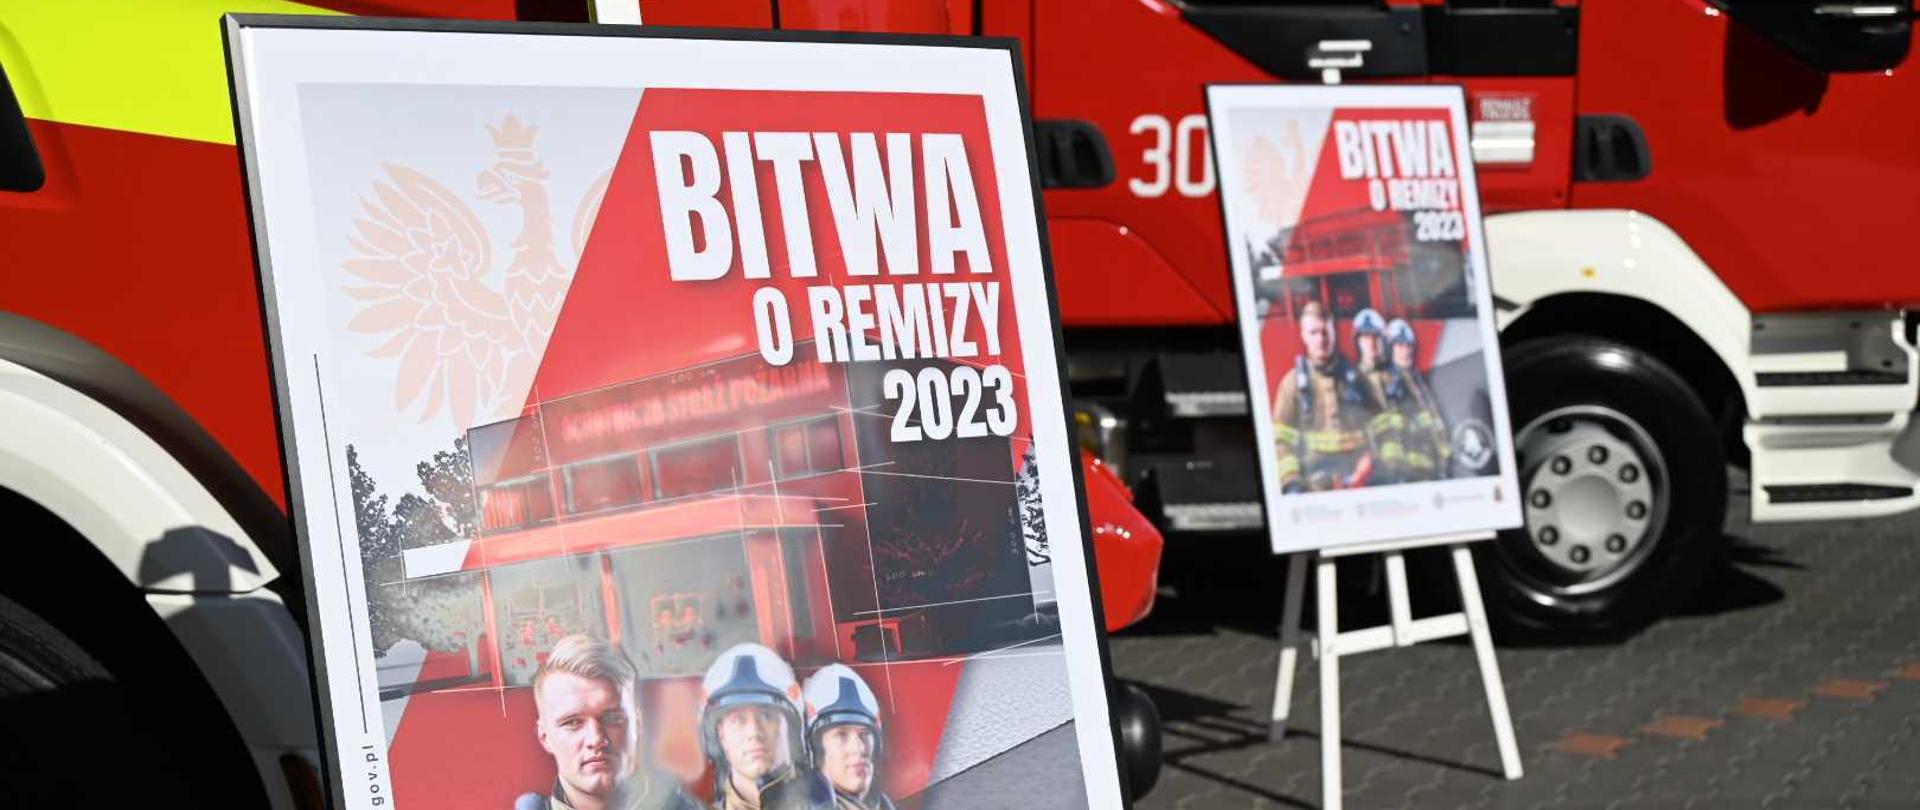 Zdjęcie przedstawia plakat akcji "Bitwa o remizy 2023" w antyramie na sztaludze. W tle czerwone strażackie samochody oraz drugi plakat na sztaludze.